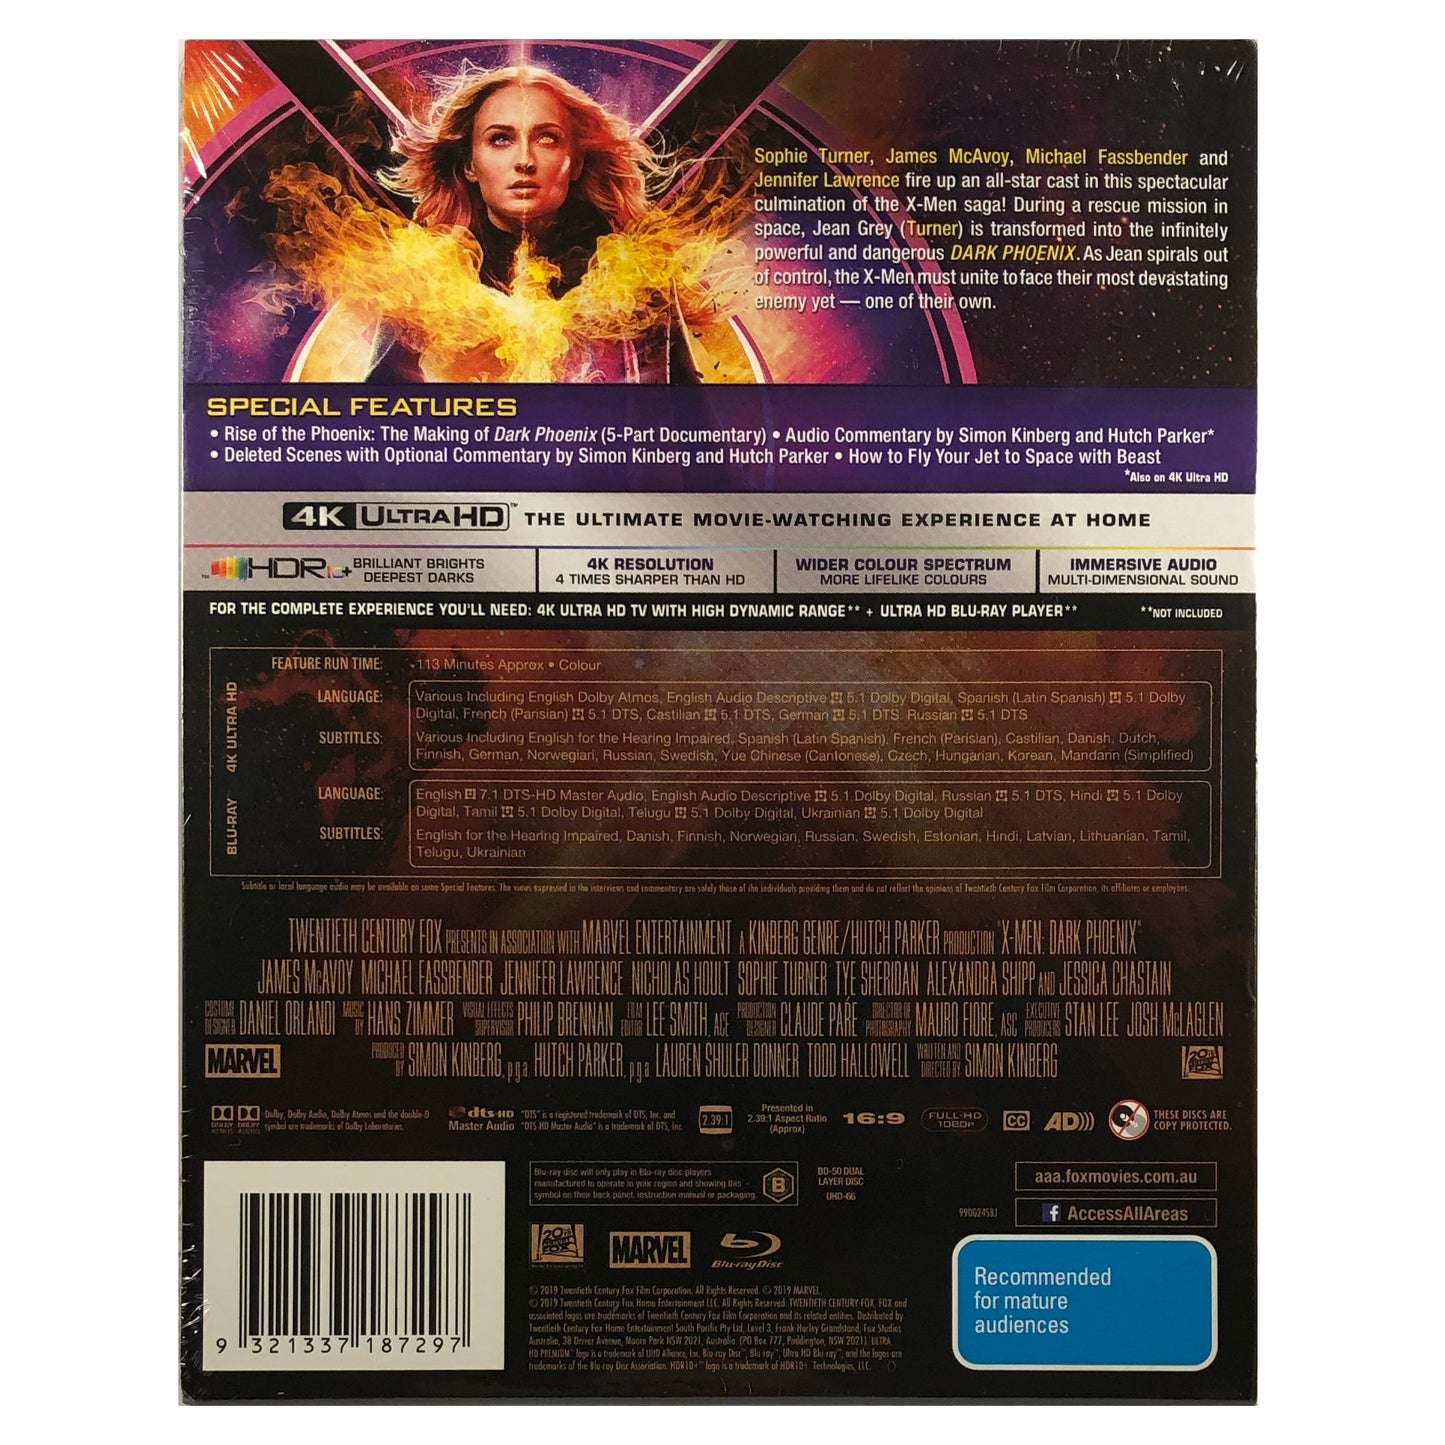 X-Men: Dark Phoenix 4K Steelbook